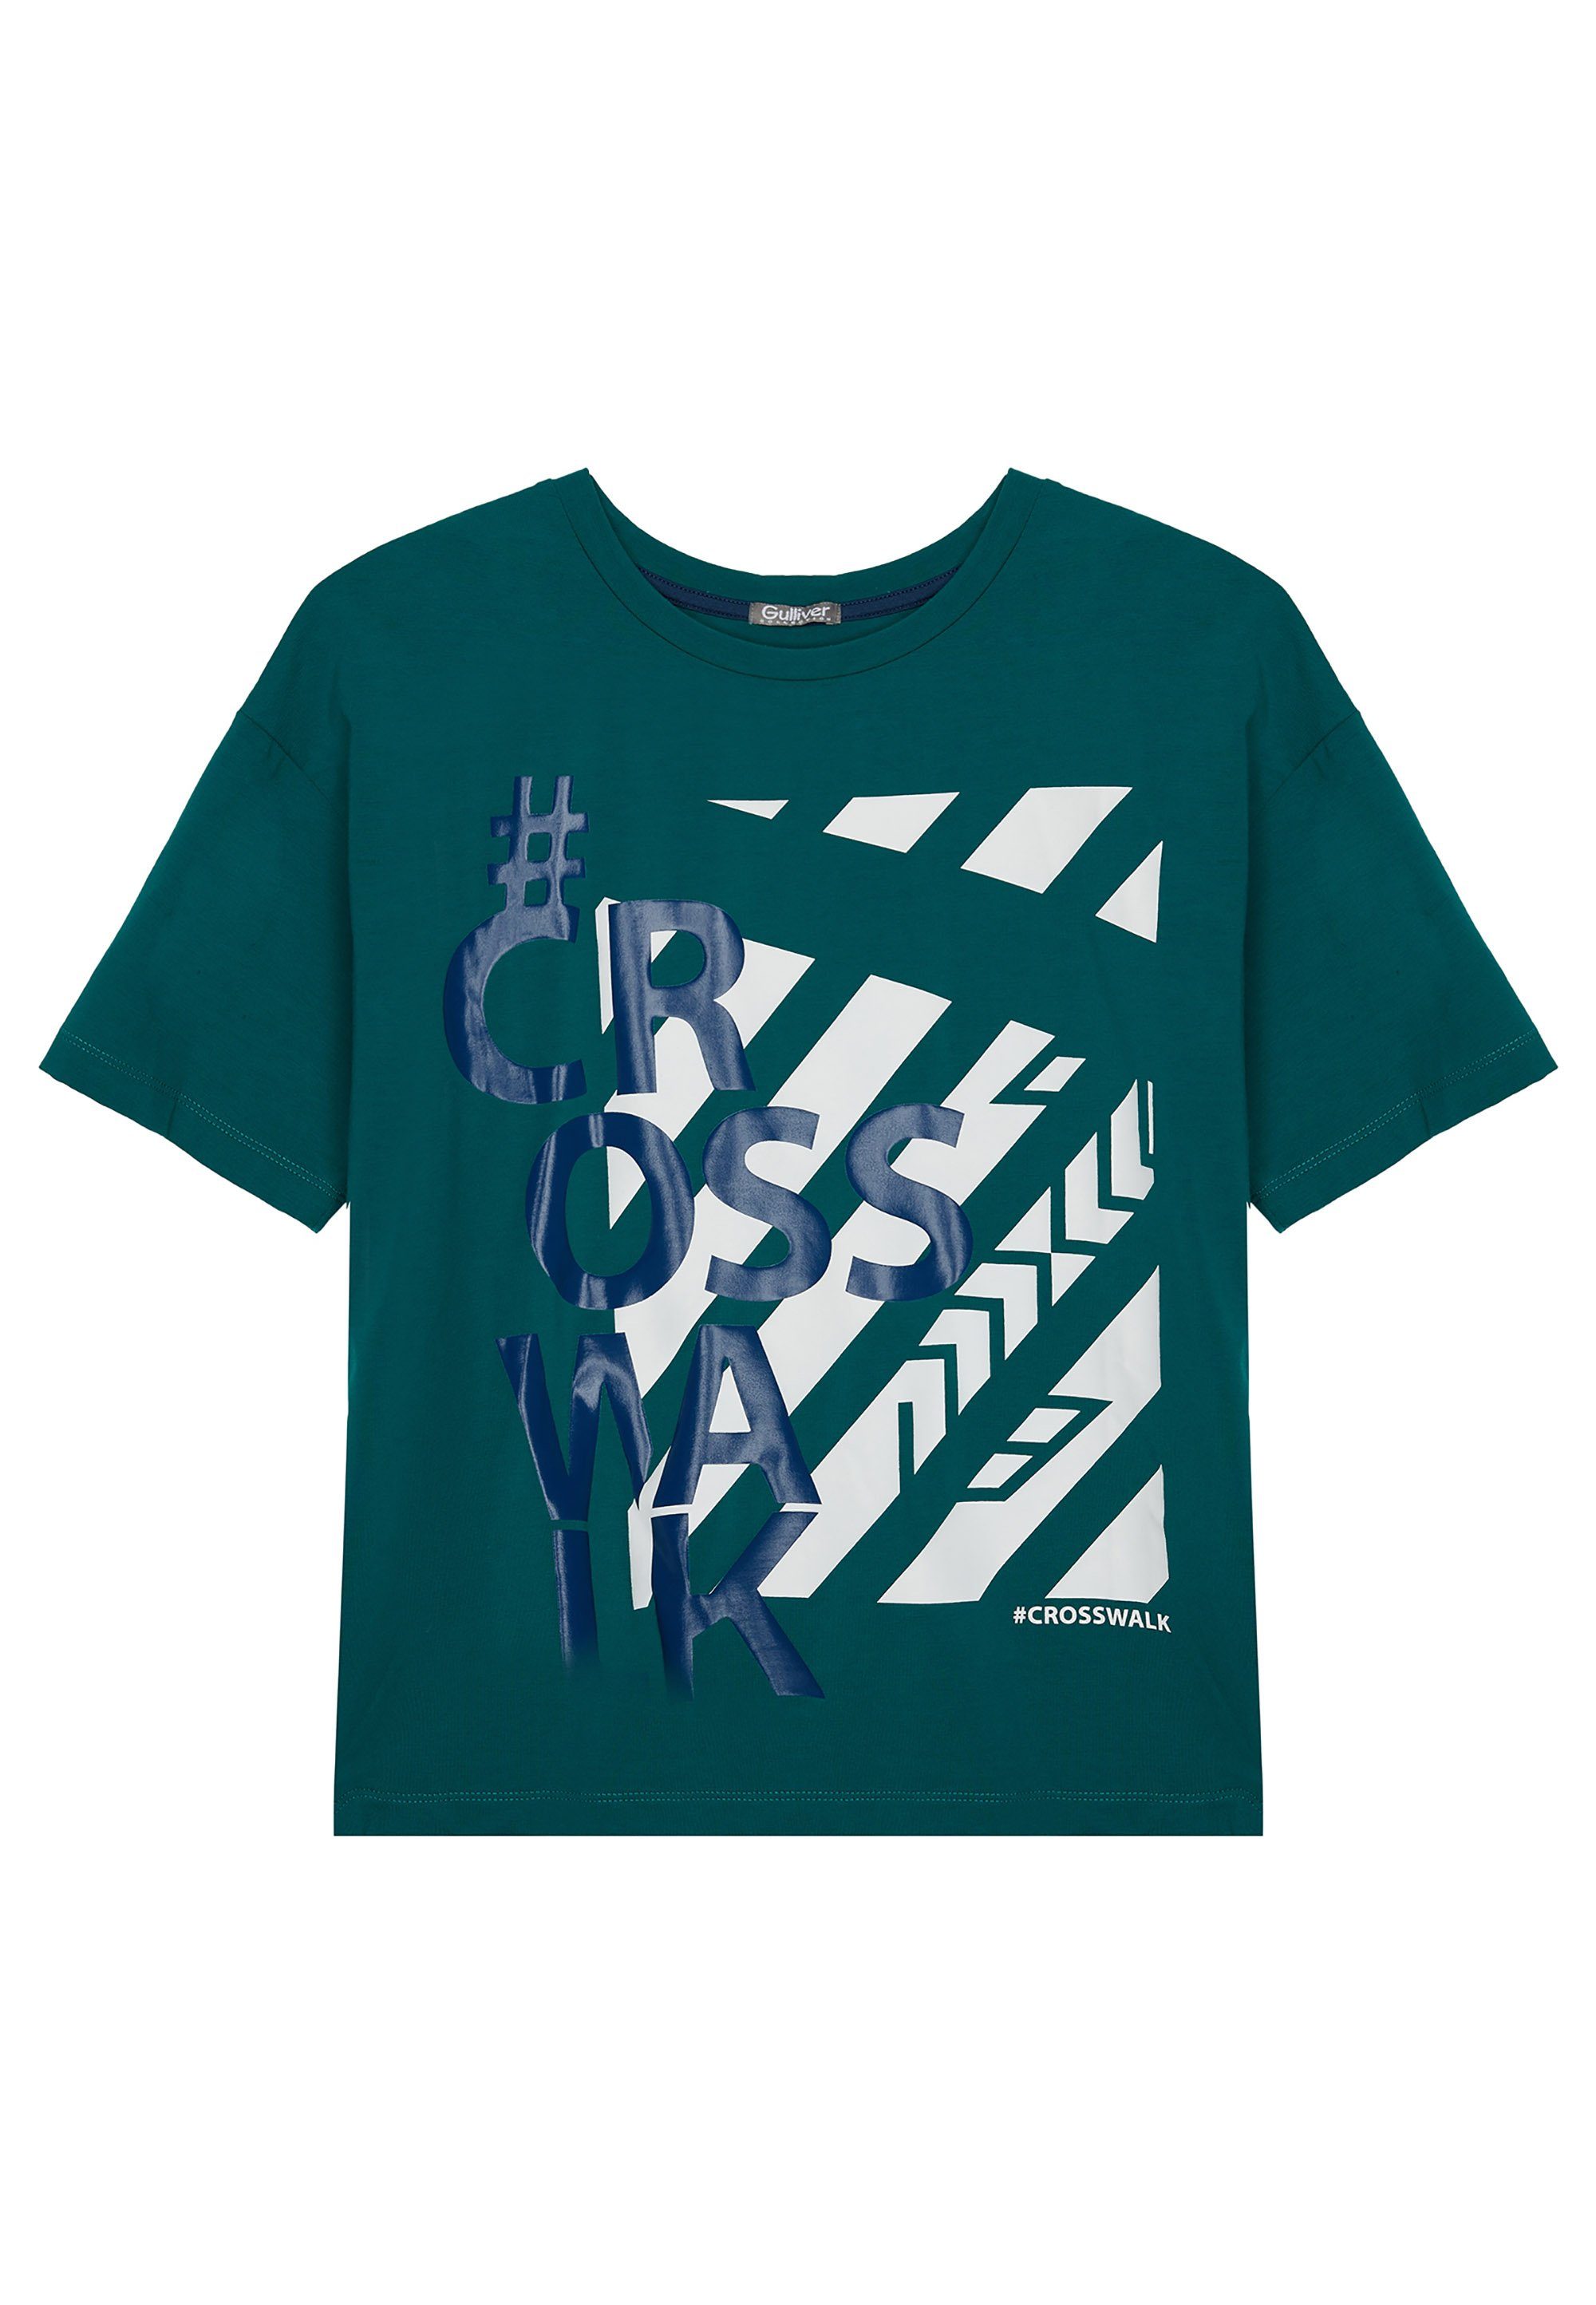 Kinder Teens (Gr. 128 - 182) Gulliver T-Shirt mit stylischem Frontprint